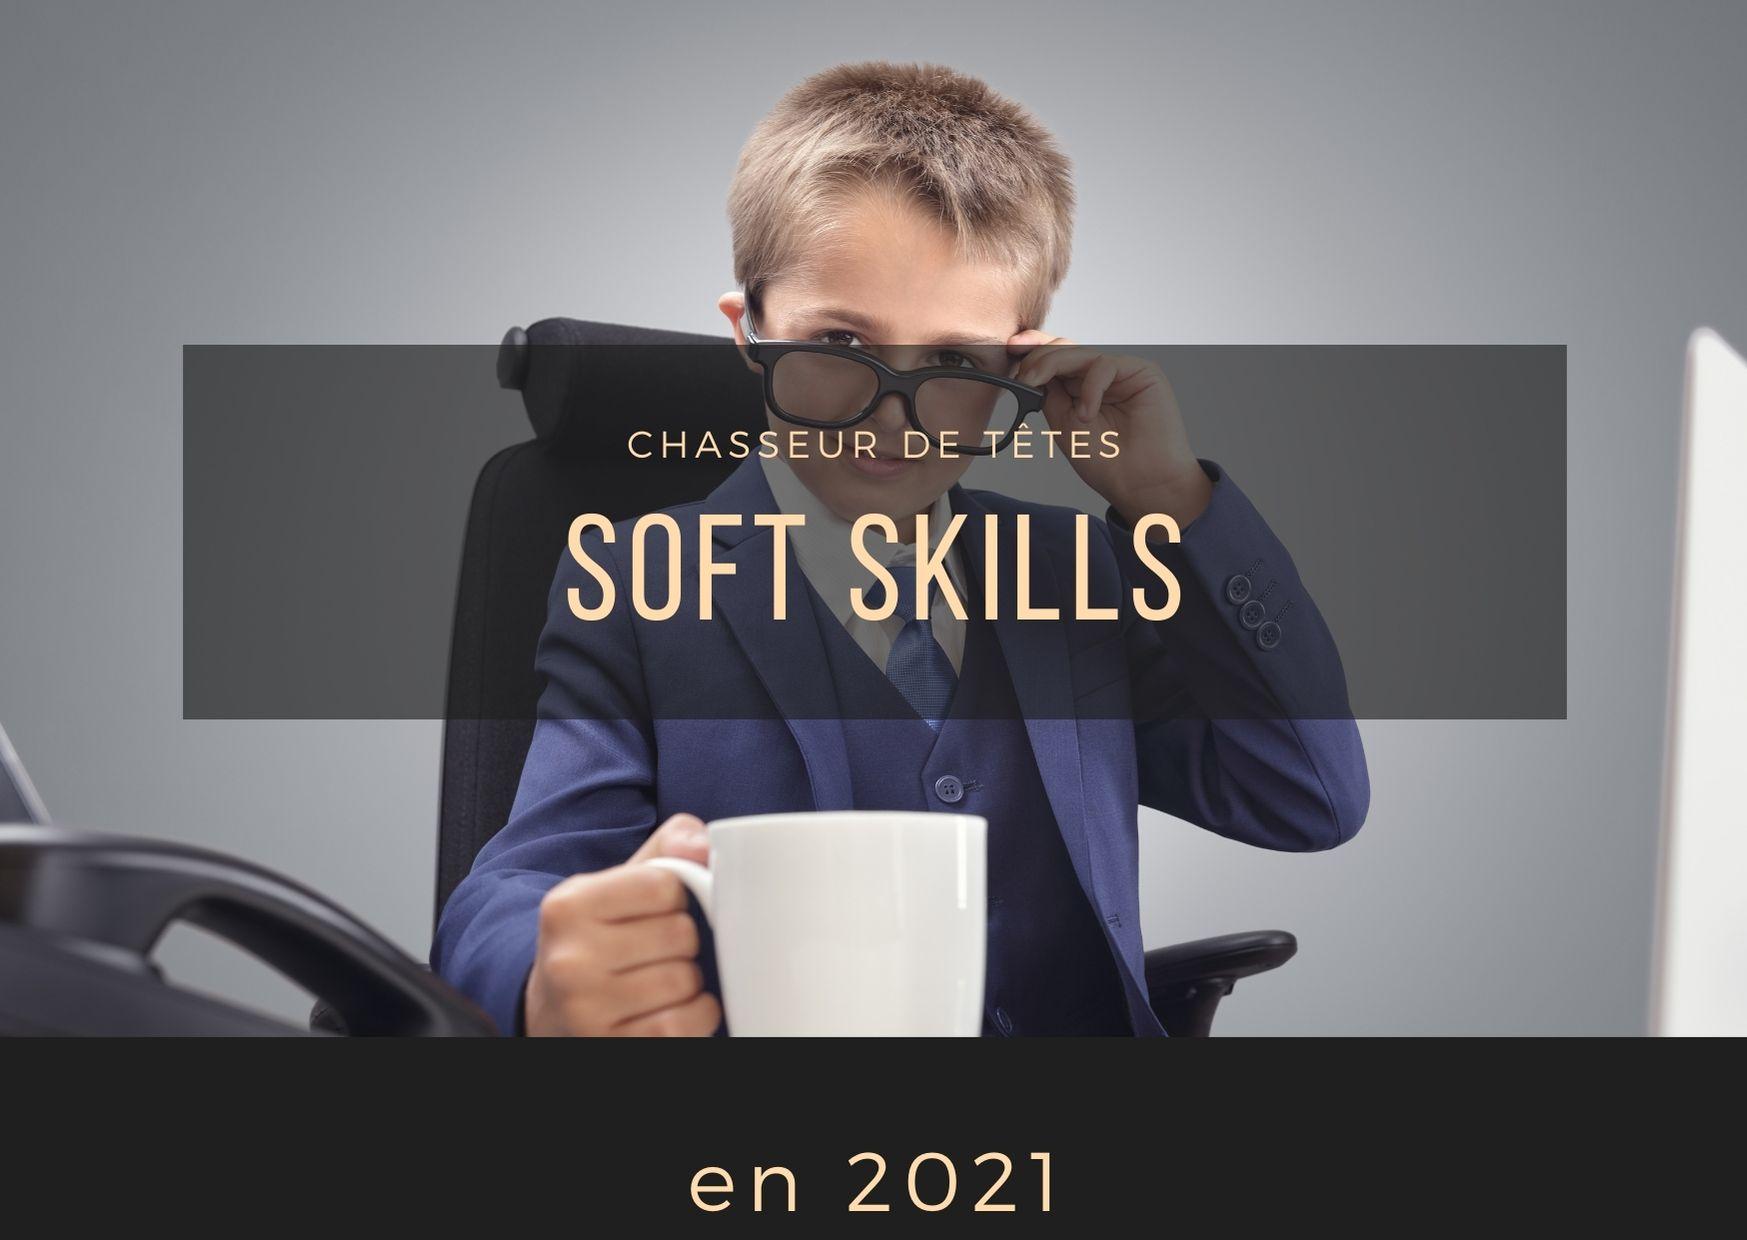 Les soft Skills en 2021 par le chasseur de tetes Euphuia